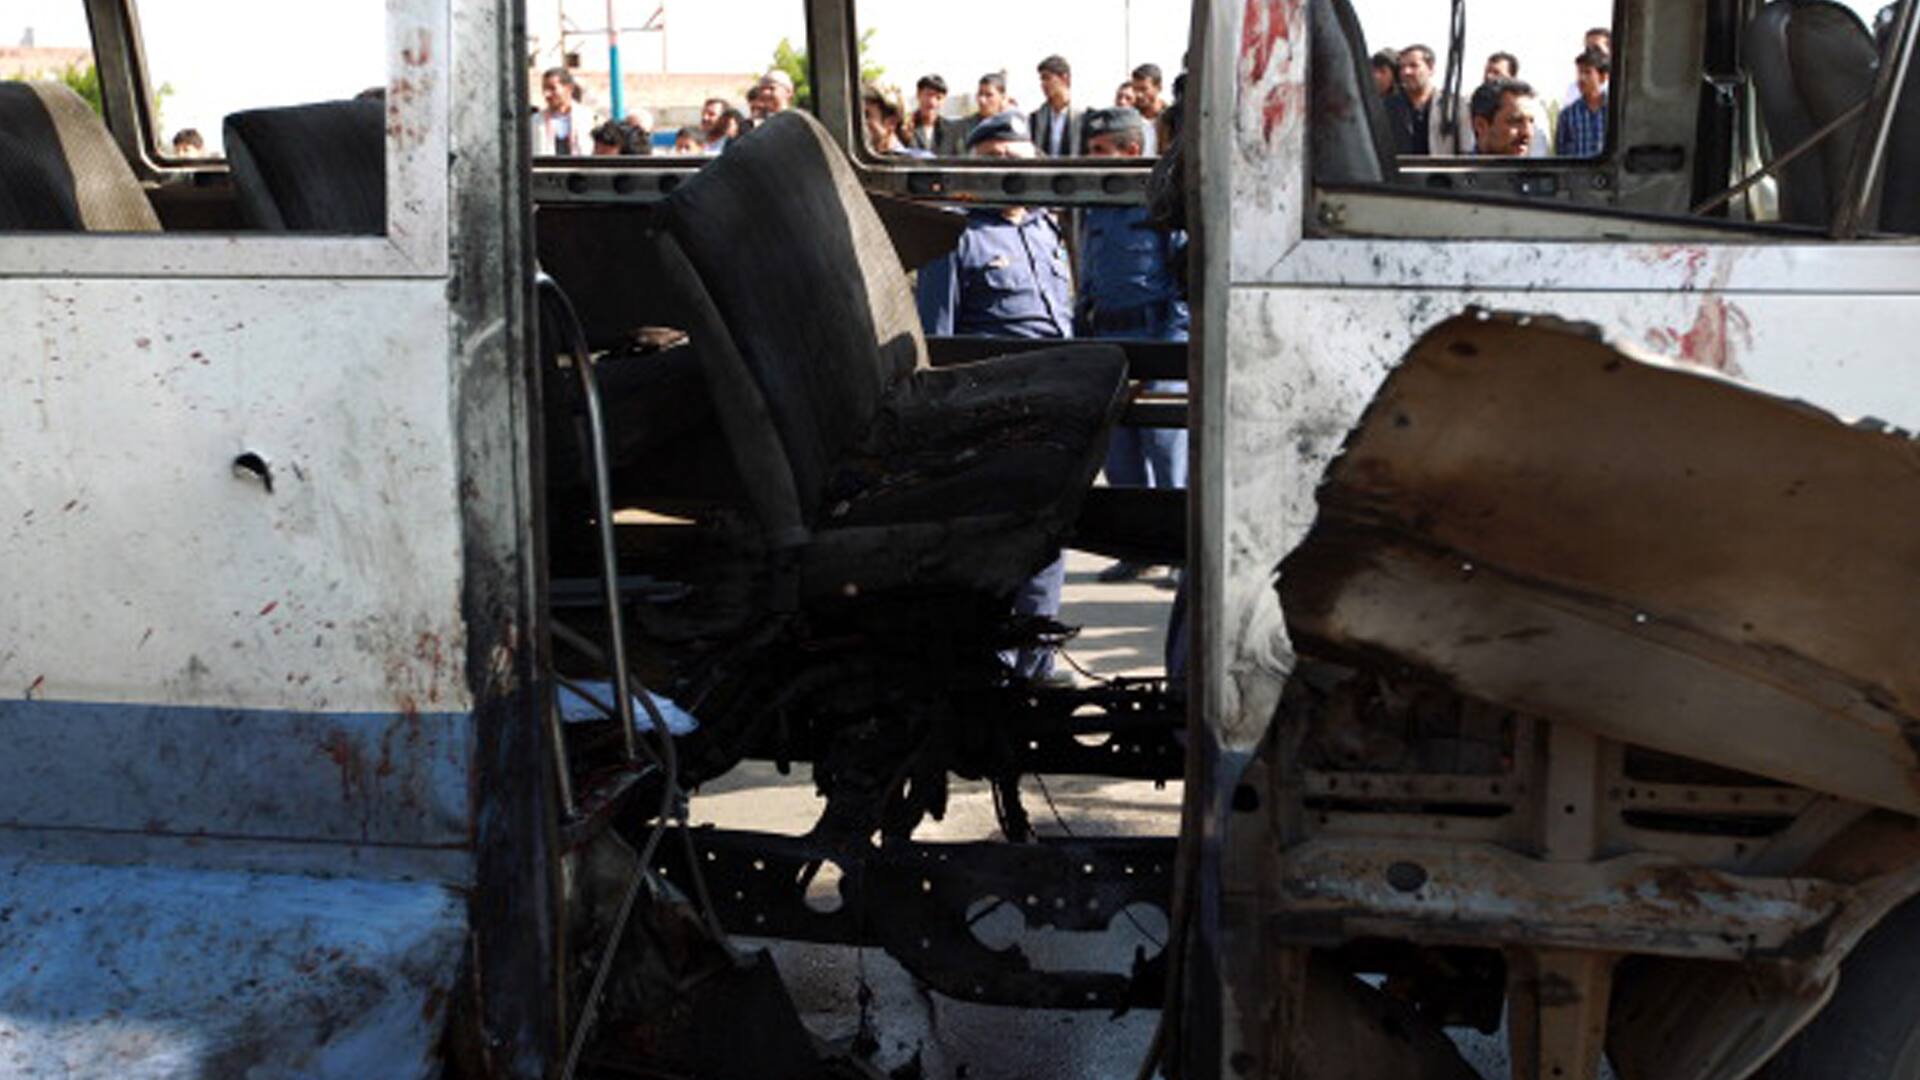 Aerial attack on bus, 29 children killed in Yemen